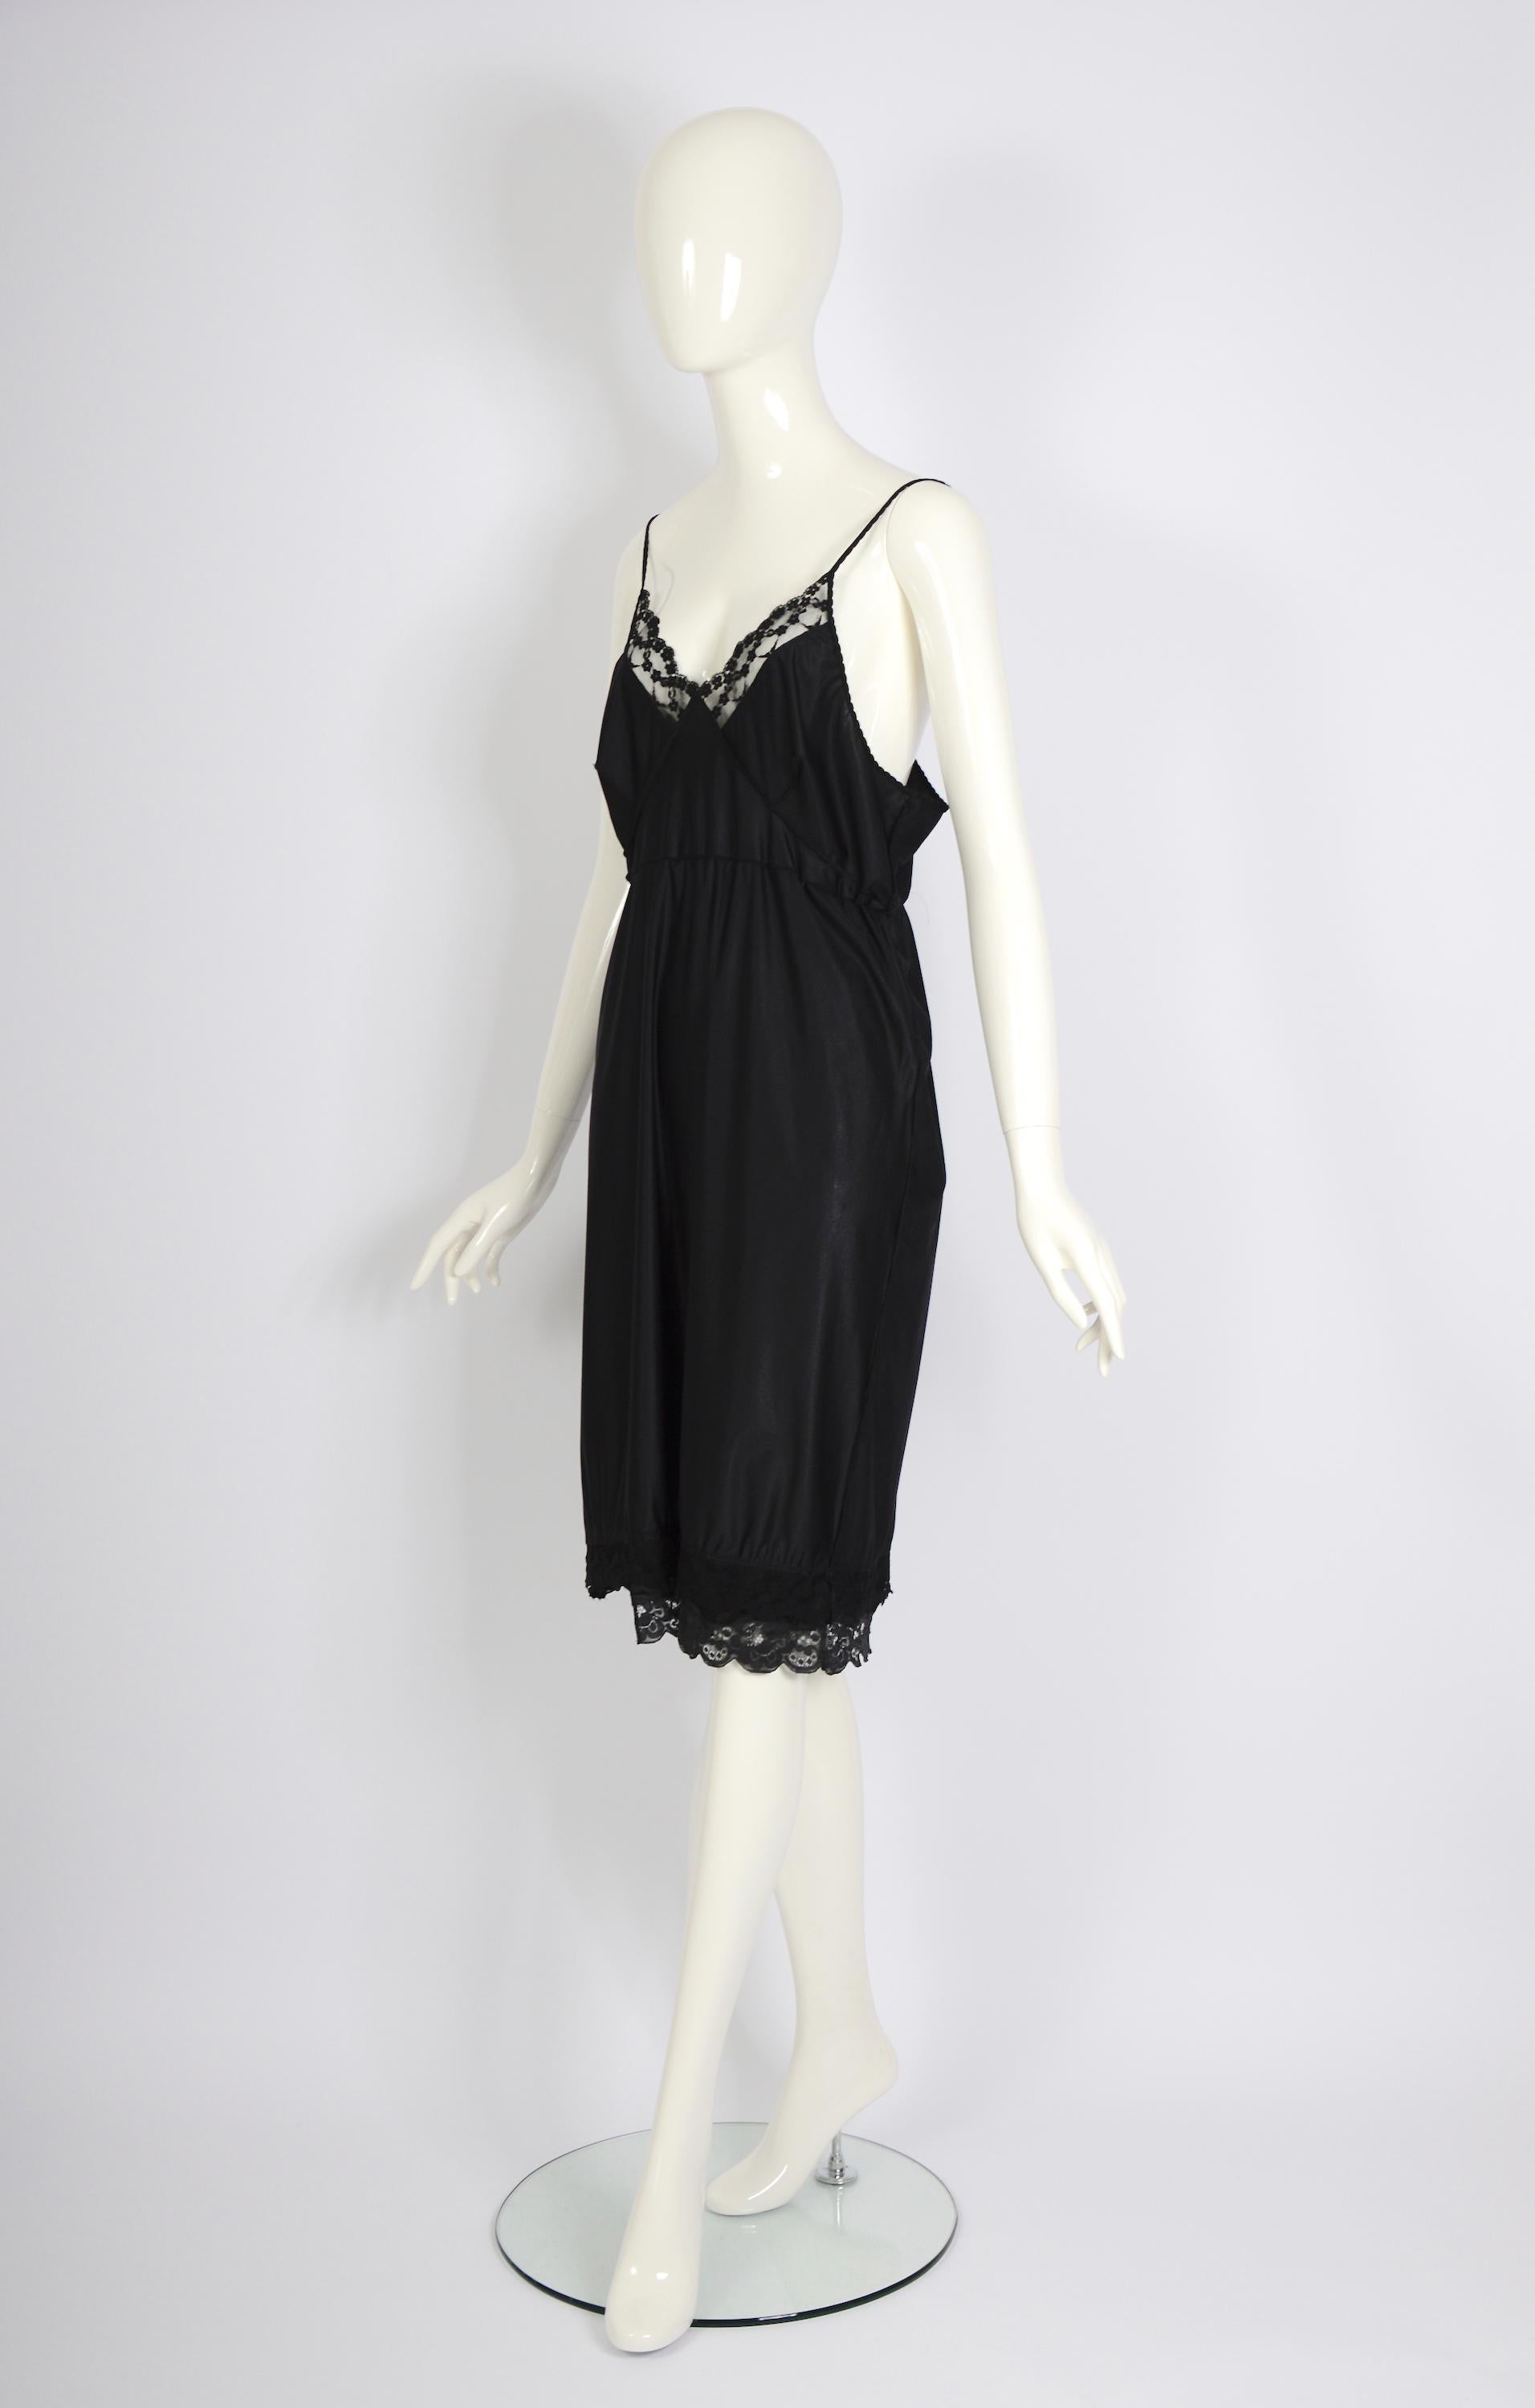 Vintage Martin Margiela artisanal ss 2003 runway black folded dress skirt For Sale 7